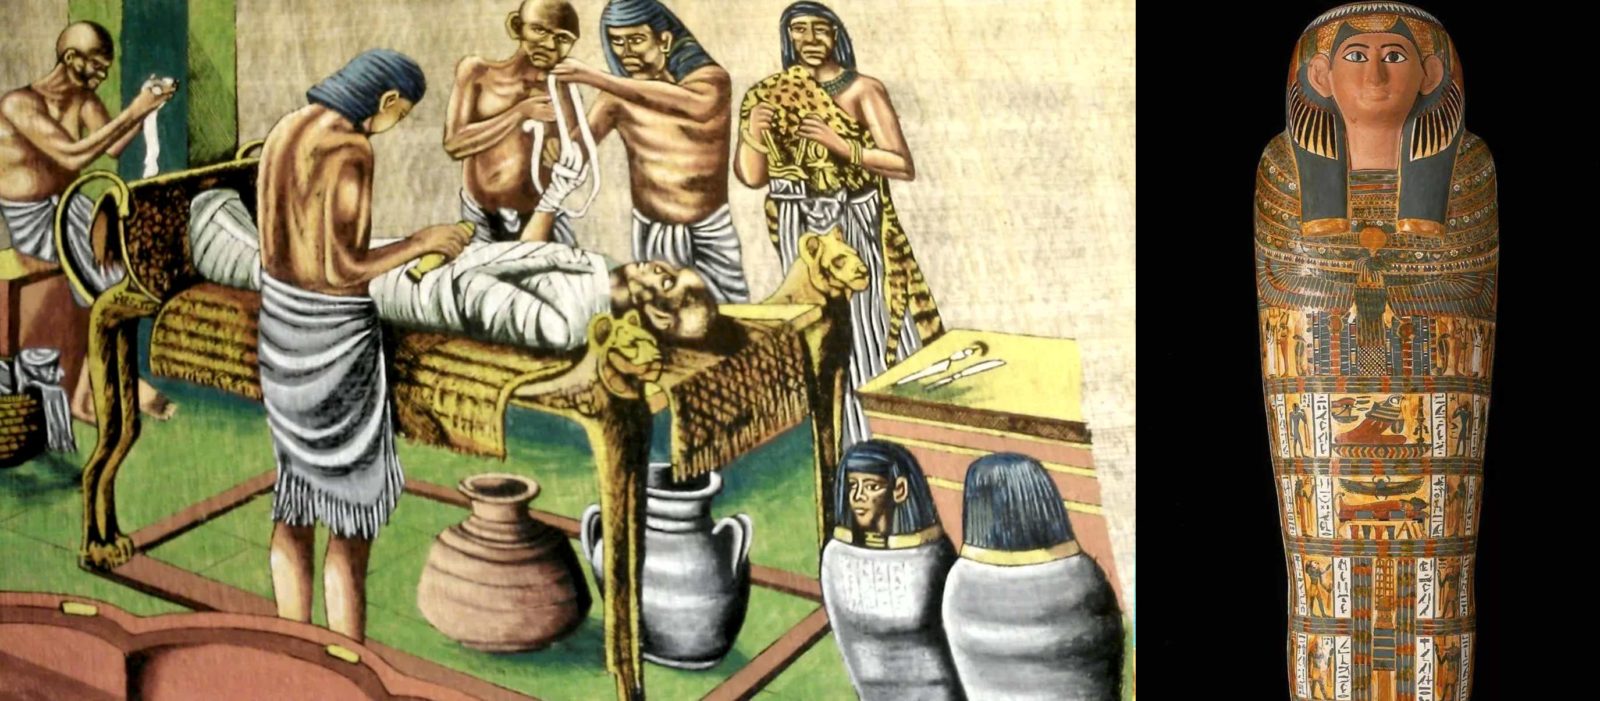 Погребение фараона кратко. Мумификация фараонов древнего Египта. Мумификация и бальзамирование в древнем Египте. Бальзамирование фараонов в древнем Египте. Мумификация в древнем Египте.